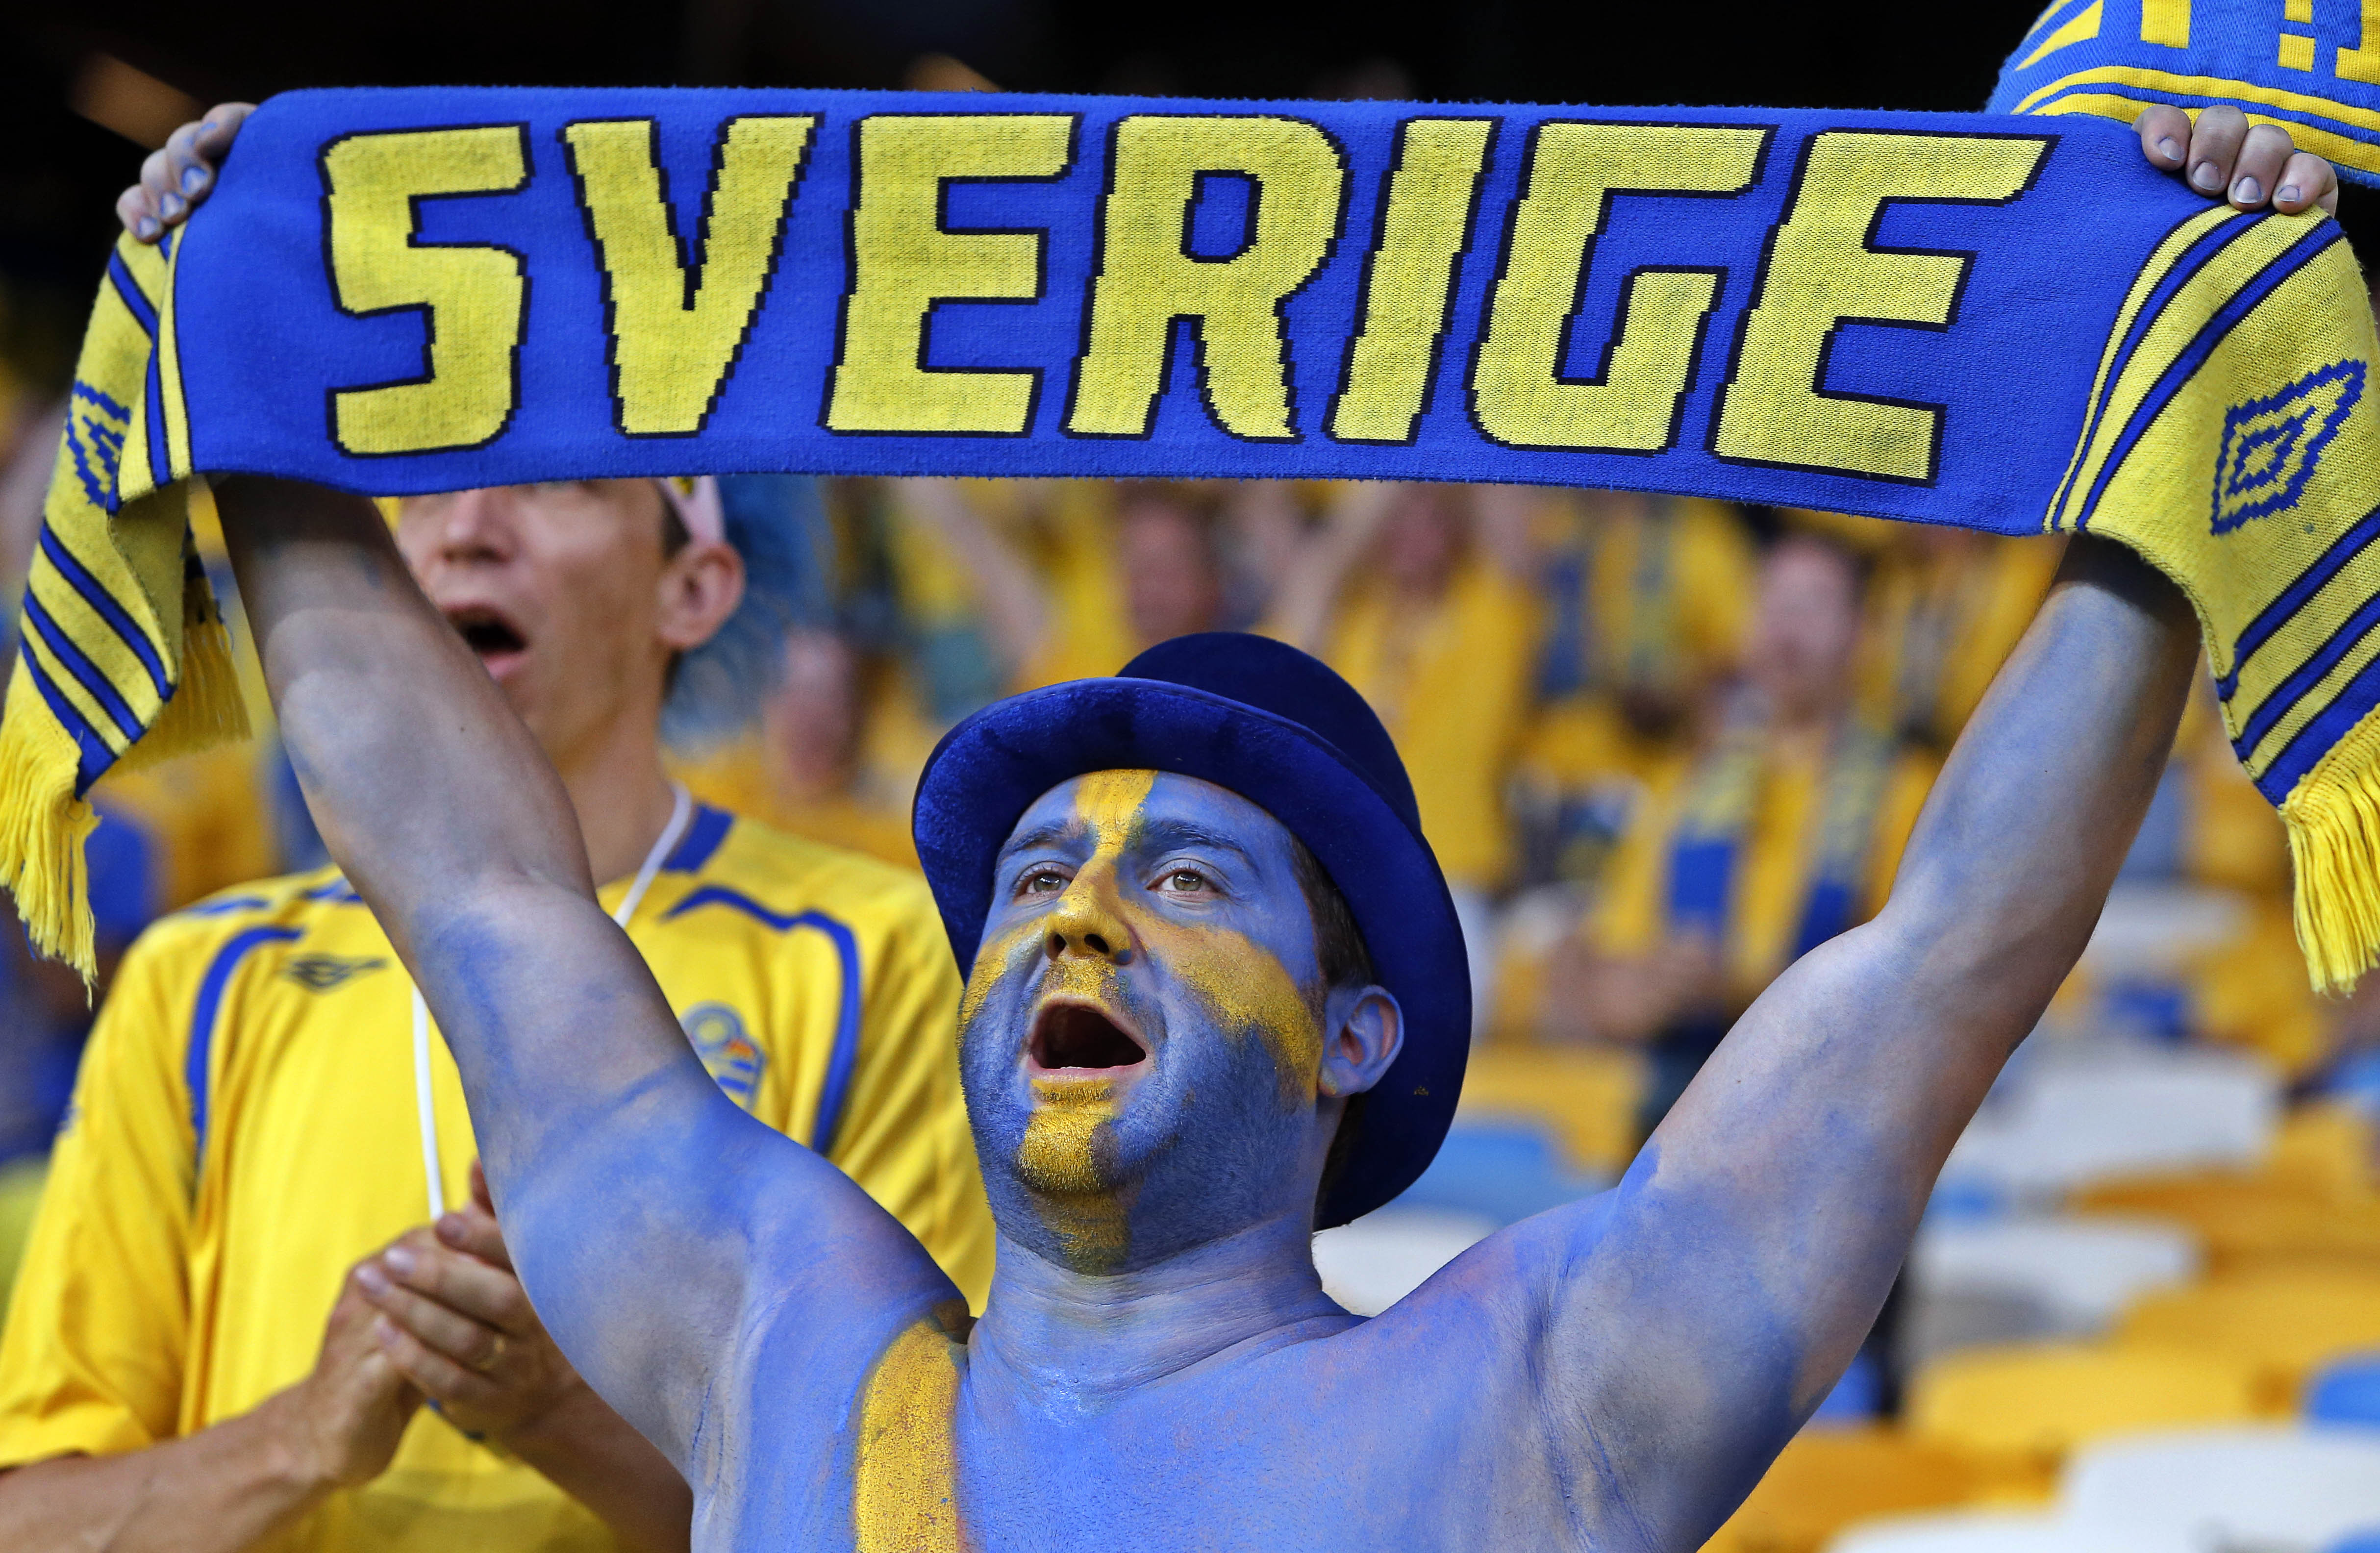 De svenska fansen på plats inne på Olympiastadion i Kiev.